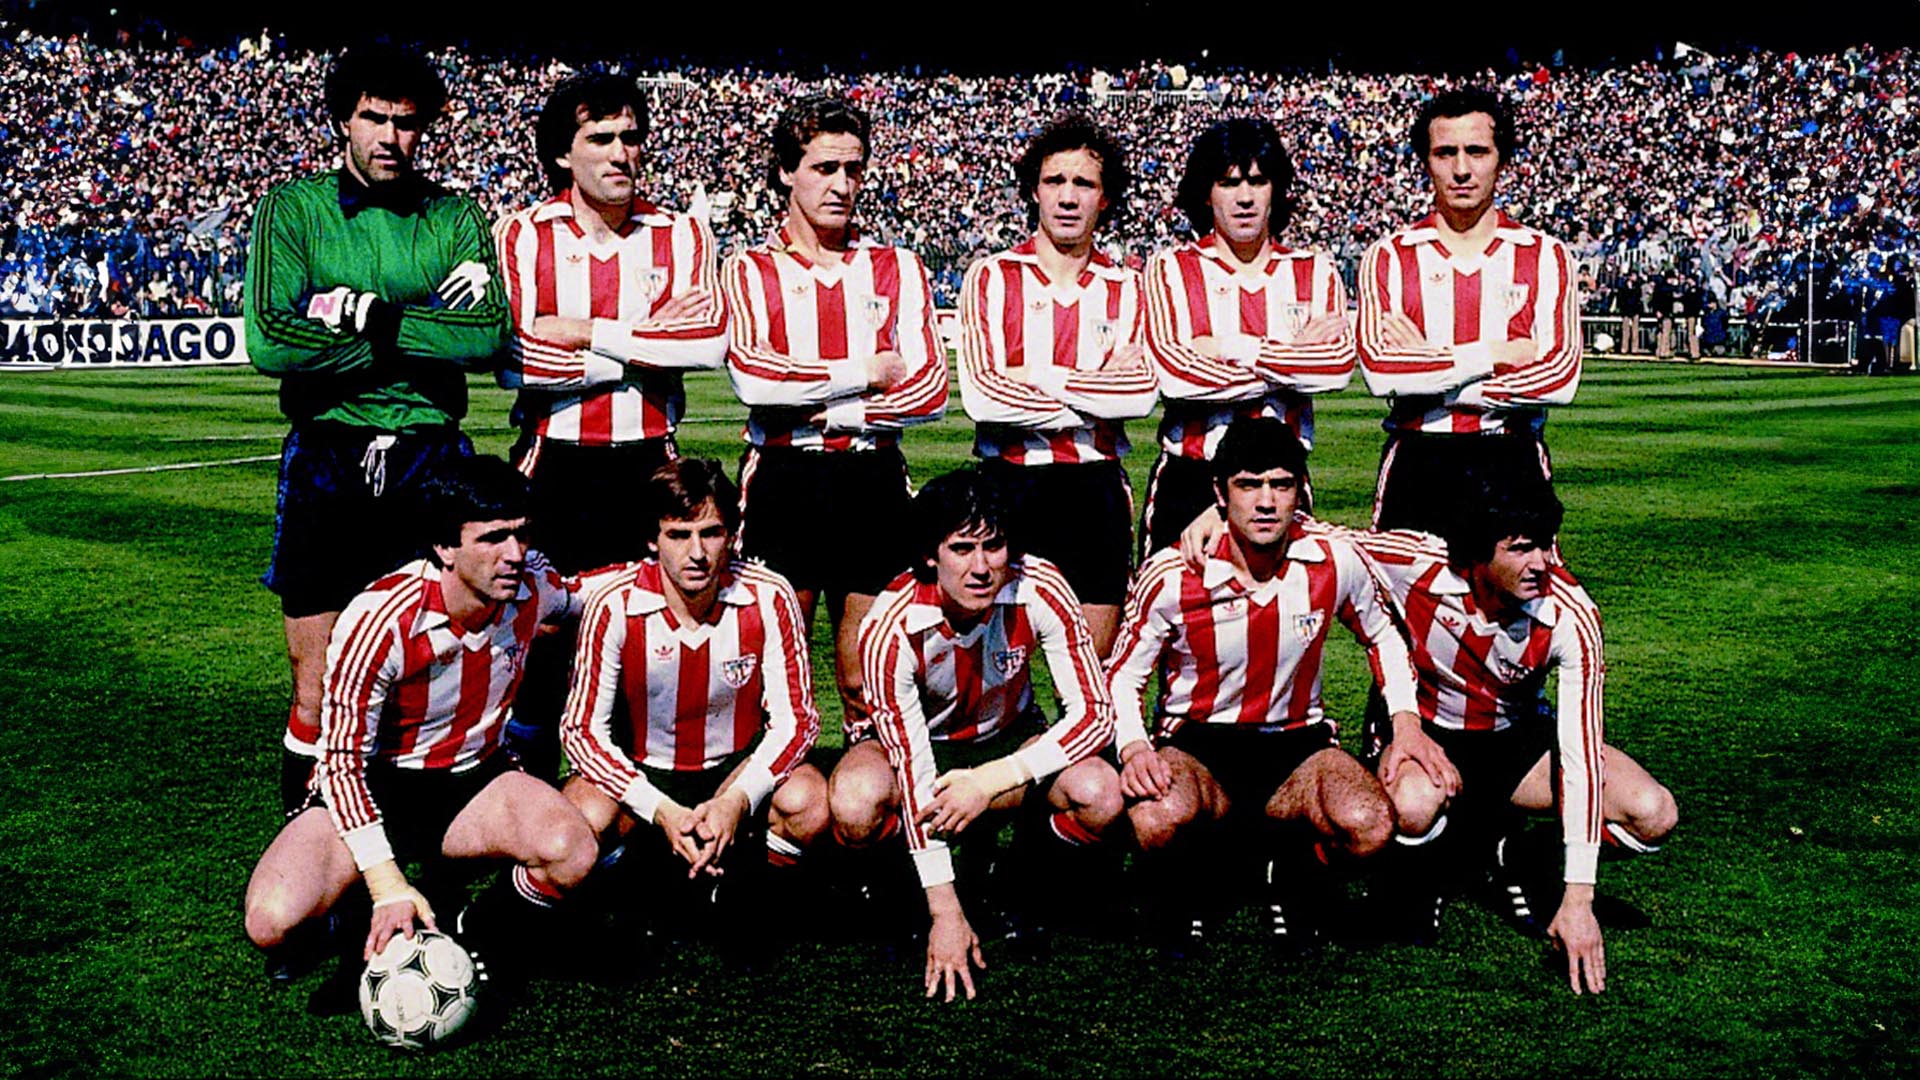 Aquel Athletic de la temporada 1983/1984 estaba entrenado por Javier Clemente, con nombres bordados en letras de oro de la historia del club como Zubizarreta, Goikoetxea, Liceranzu, Urtubi, Sarabia, Dani o el actual seleccionador, Luis de la Fuente, entre otros.  